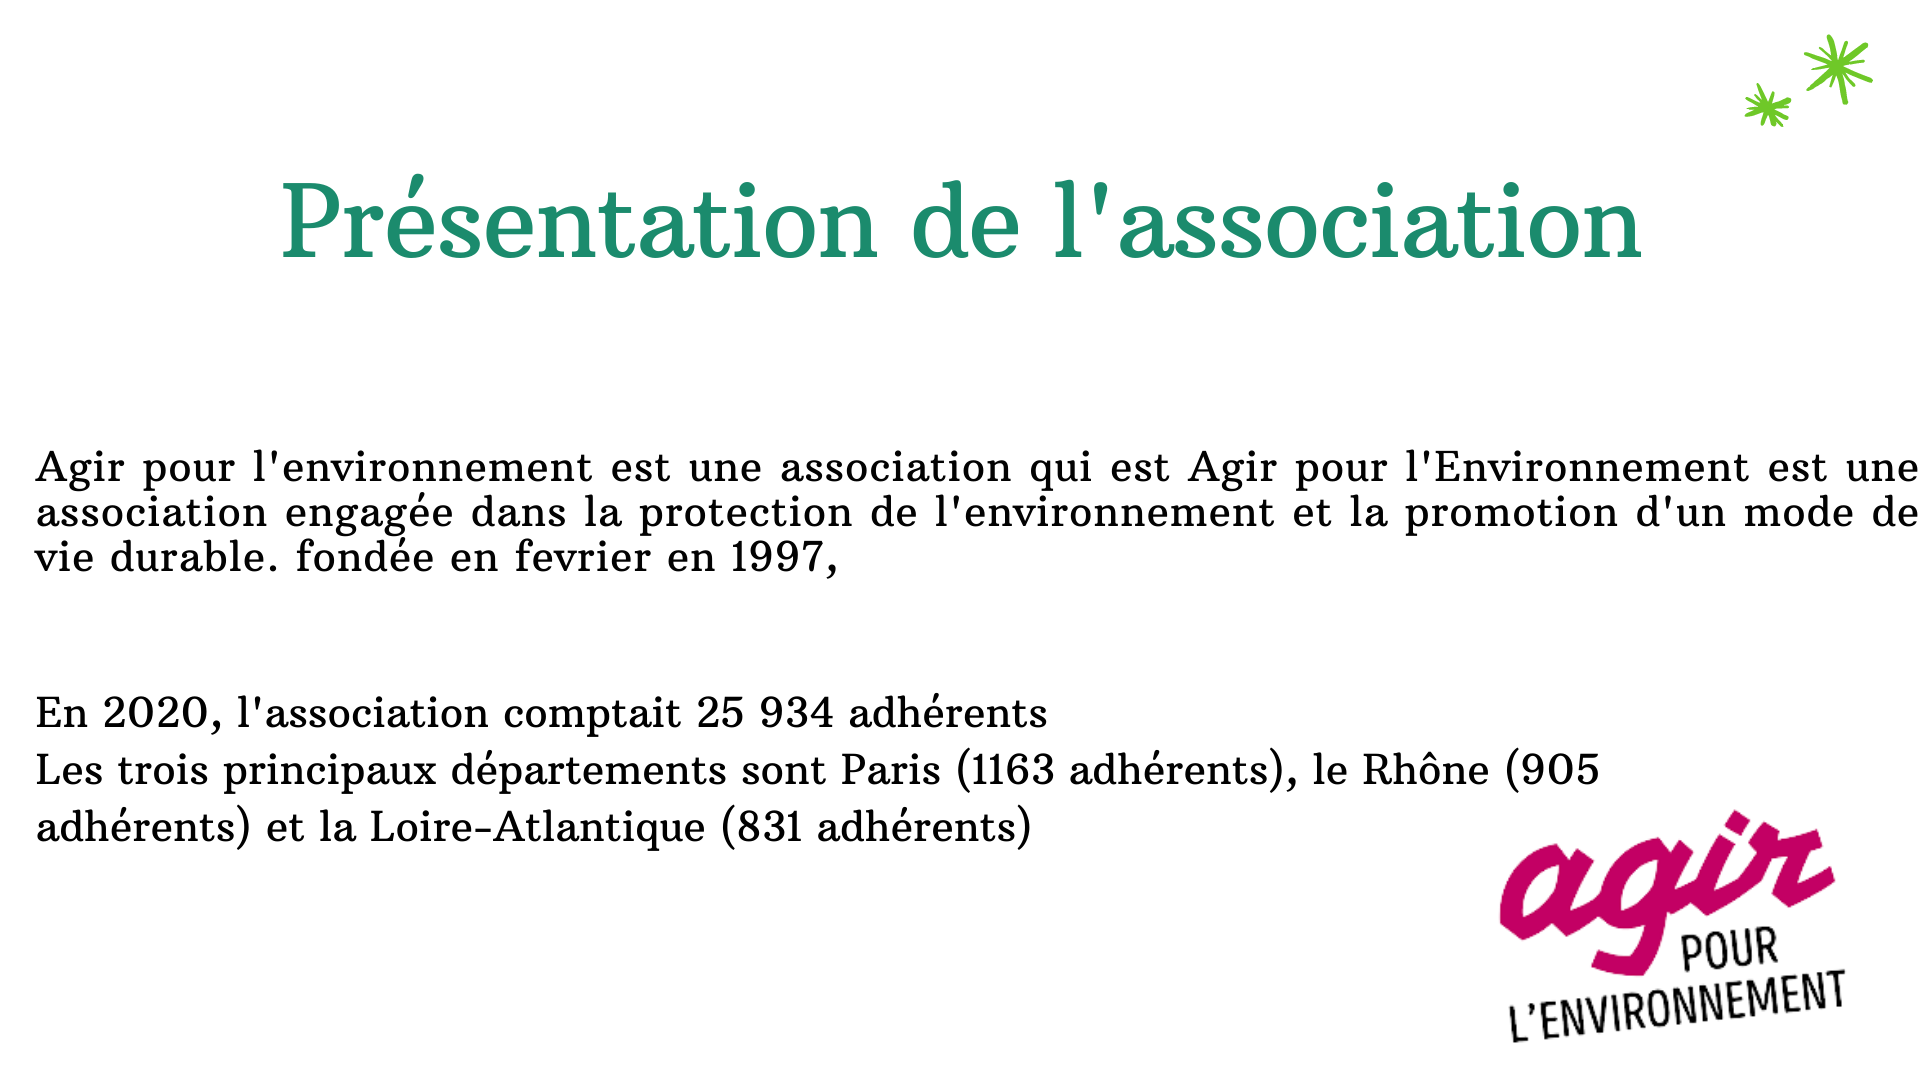 Presentation de l'association

Agir pour l'environnement est une association qui est Agir pour l'Environnement est une
association engagée dans la protection de l'environnement et la promotion d'un mode de
vie durable. fondée en fevrier en 1997,

En 2020, l'association comptait 25 934 adhérents
Les trois principaux départements sont Paris (1163 adhérents), le Rhône (905
adhérents) et la Loire-Atlantique (831 adhérents) ®

POUR
L'ENVIRONNEMENT